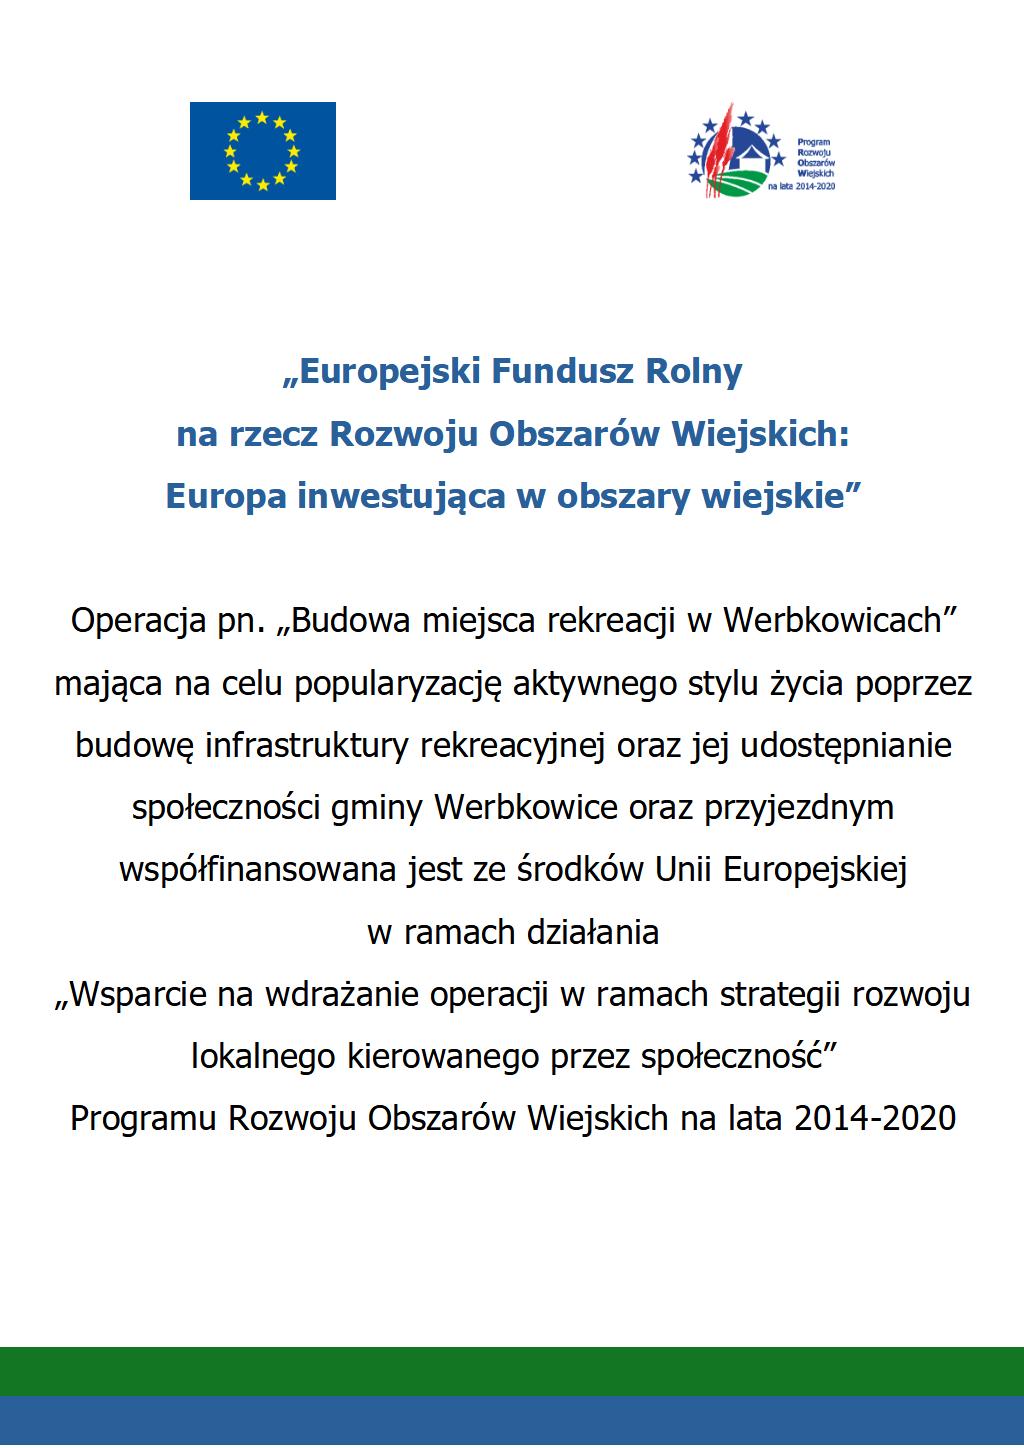 Budowa miejsca rekreacji w Werbkowicach - informacje o projekcie